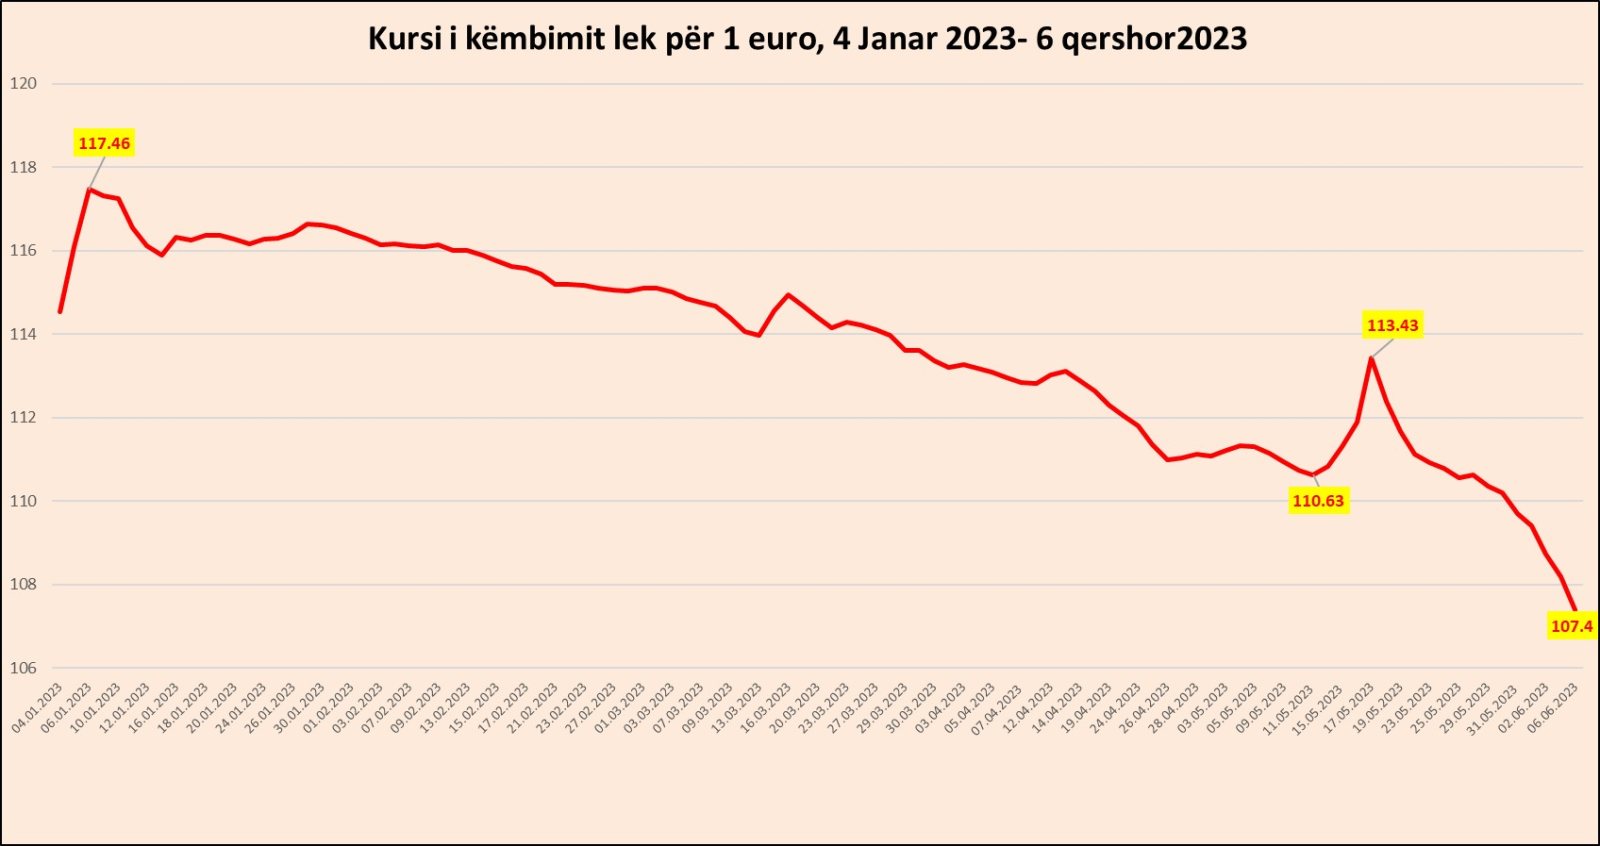 Rënies së euros nuk po i duket fundi: Kursi bie në 107.4 lekë, rënia vjetore arrin në 10.6%